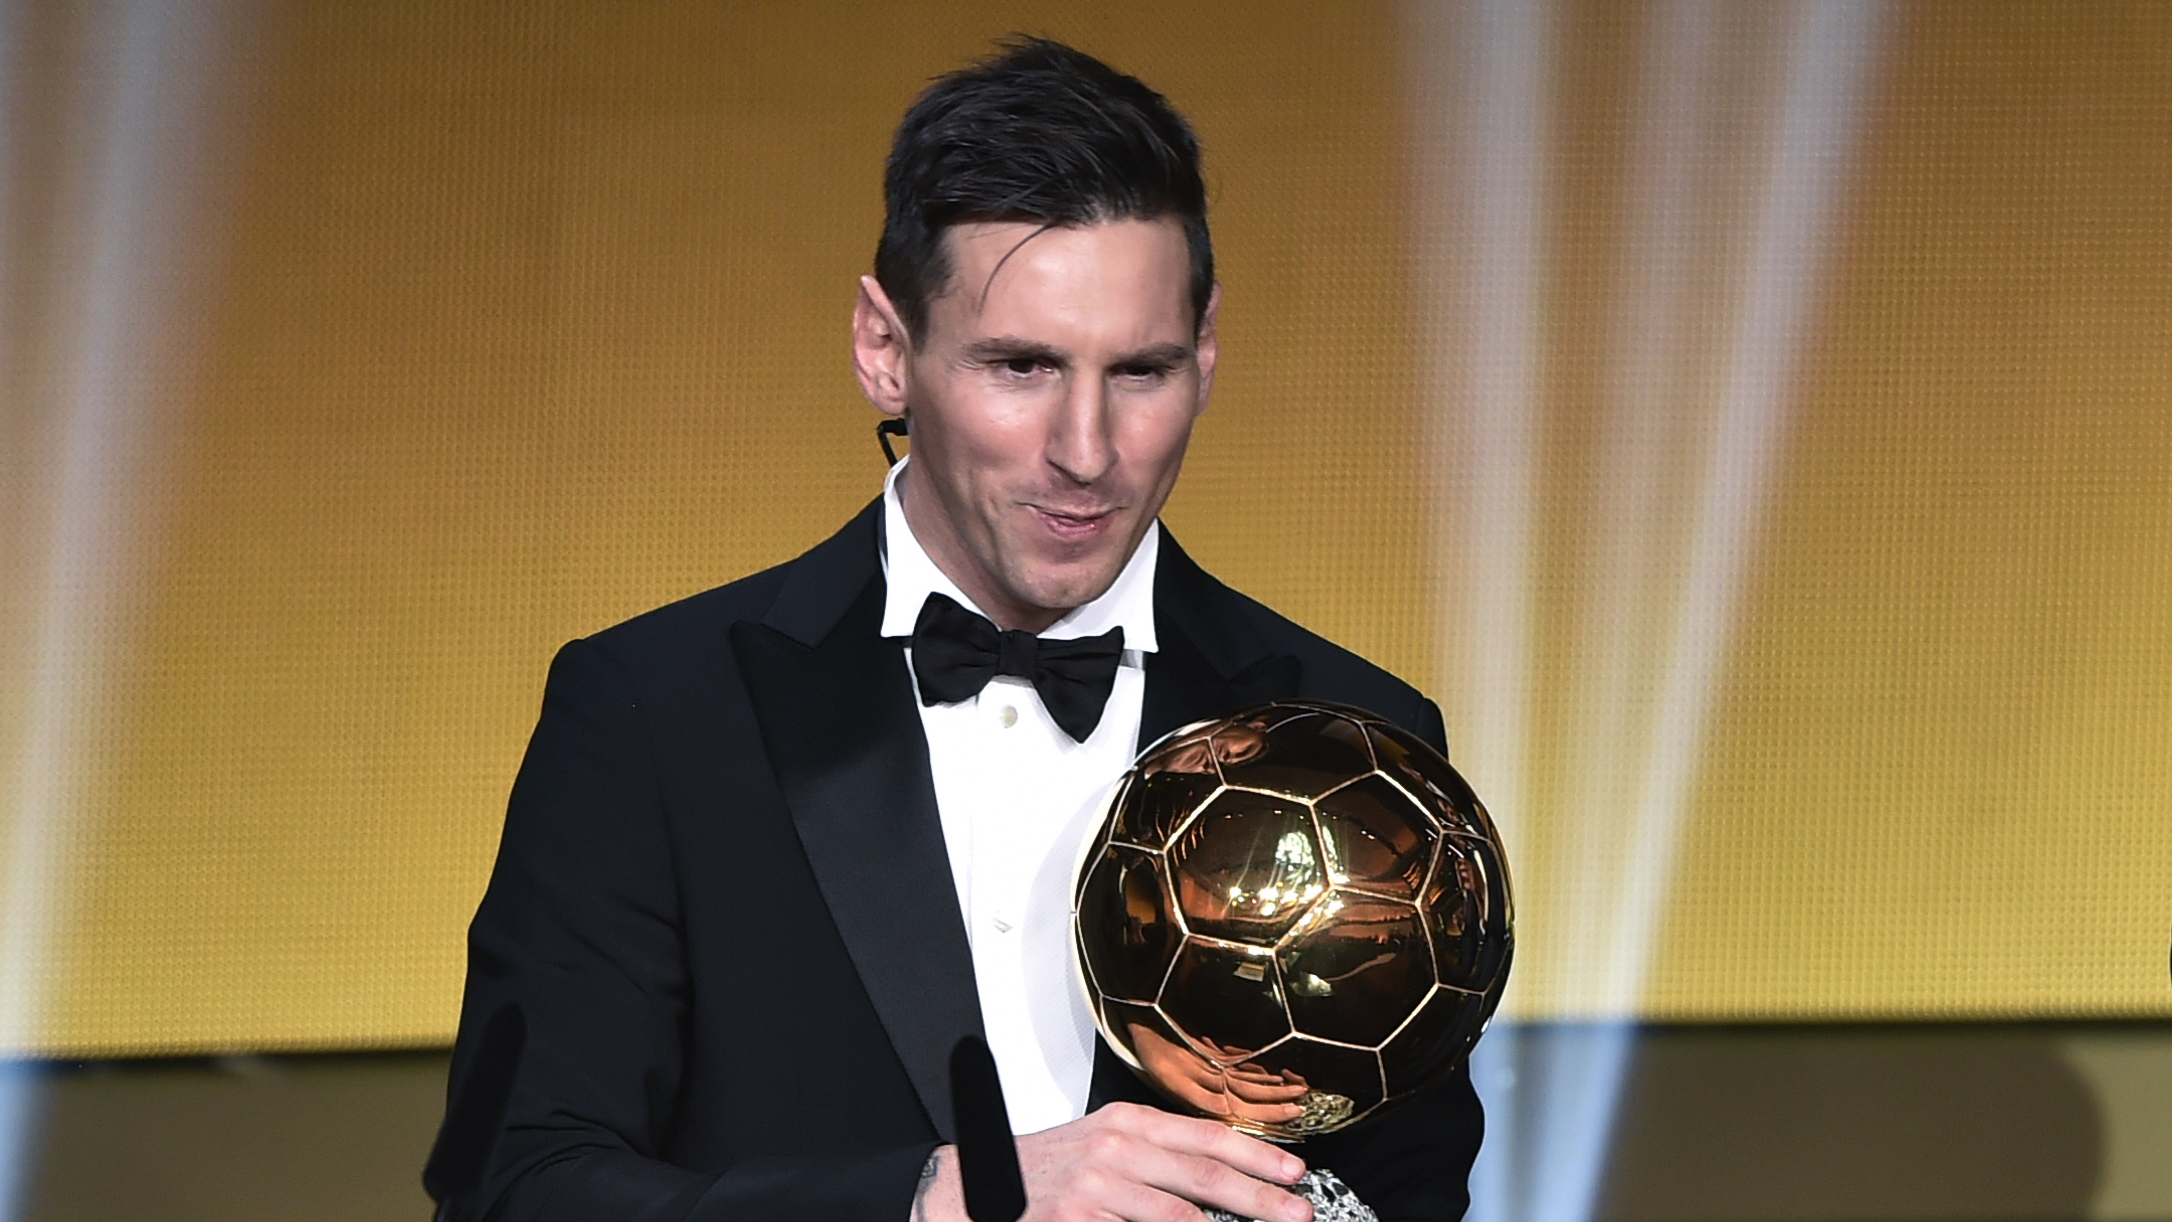 Barcelona news: Lionel Messi already deserves the next Ballon d'Or, says Rivaldo ...2172 x 1222